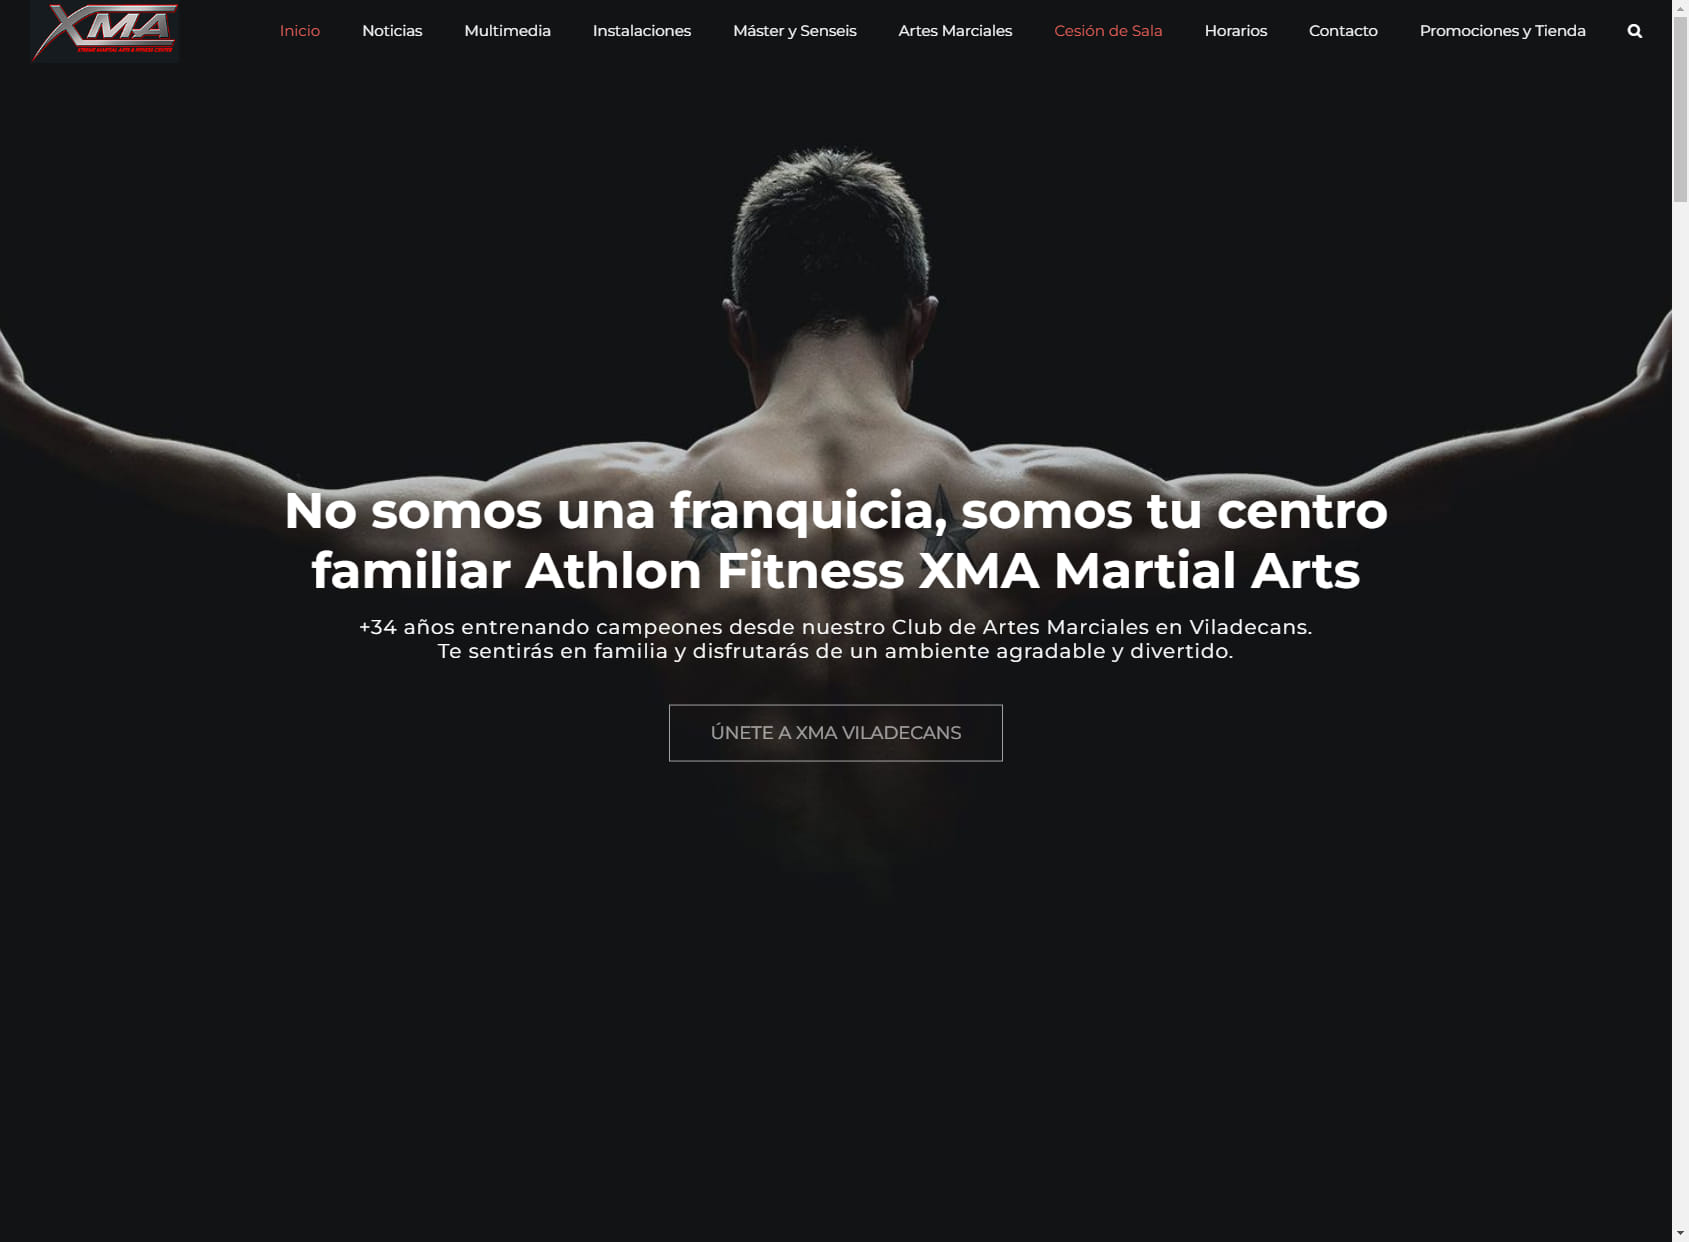 Gimnasio Athlon Fitness ,Clases Dirigidas y Artes Marciales Viladecans